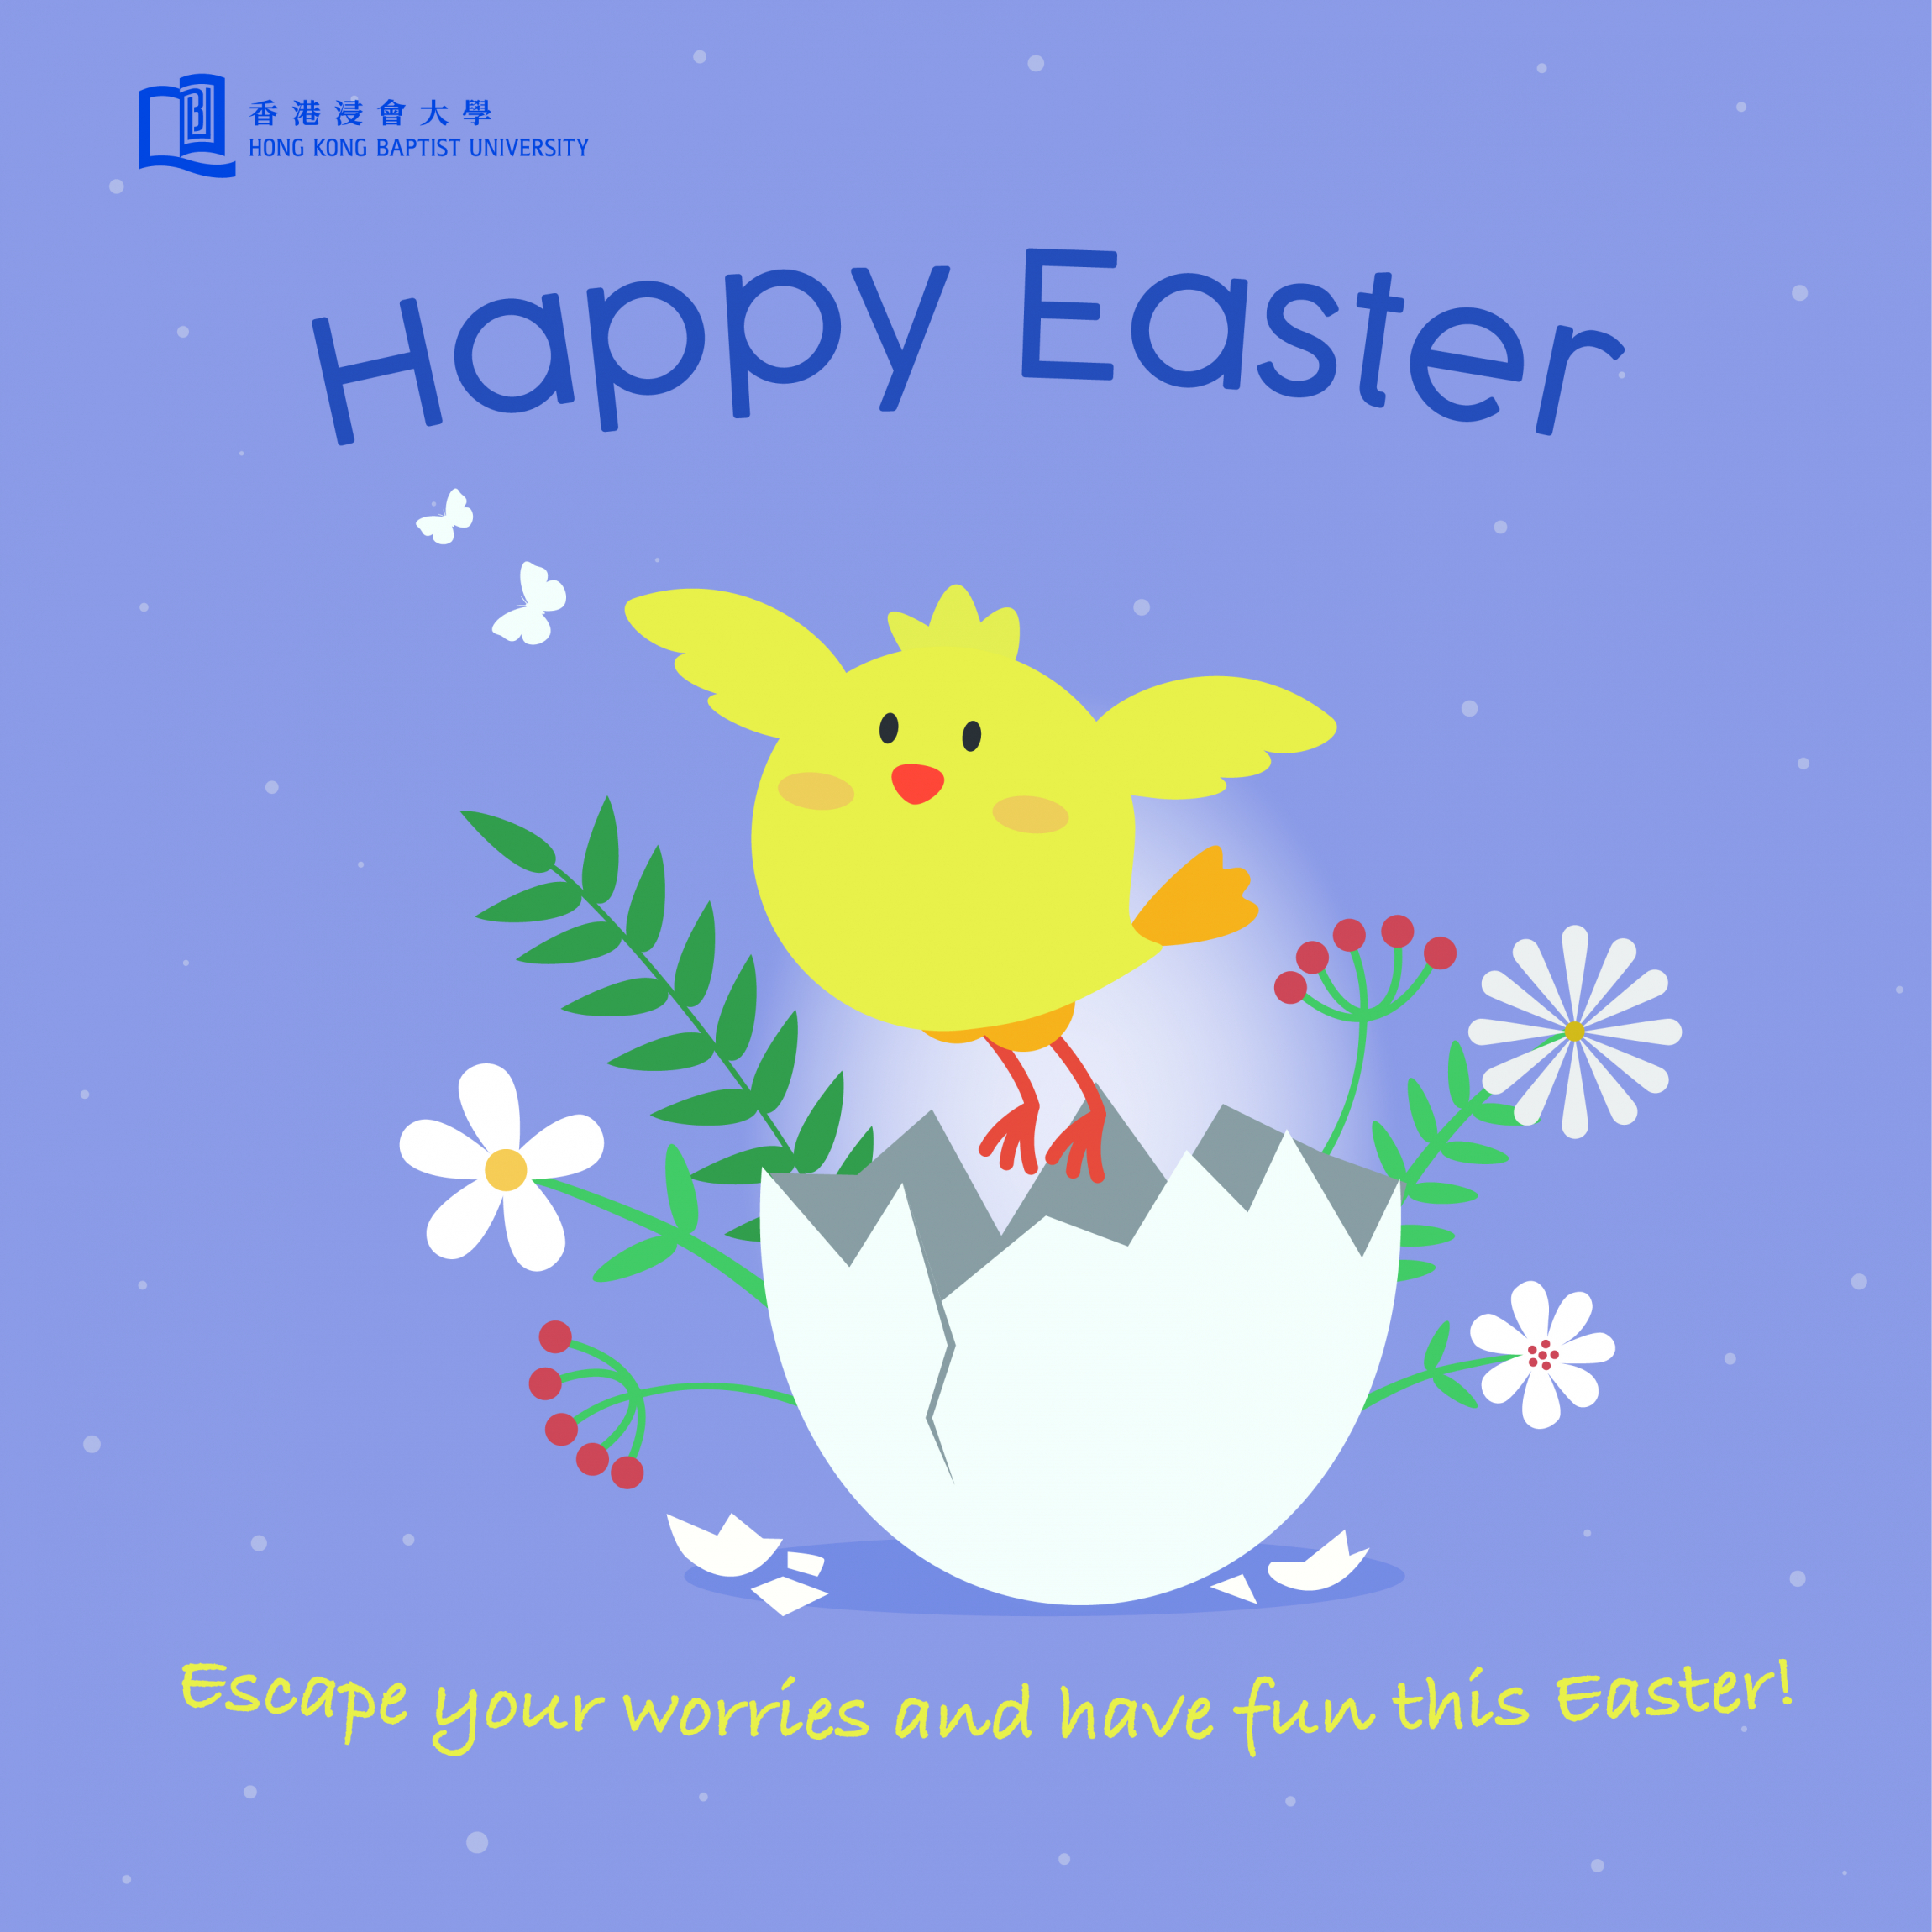 復活節快樂小雞—Escape your worries and have fun this Easter